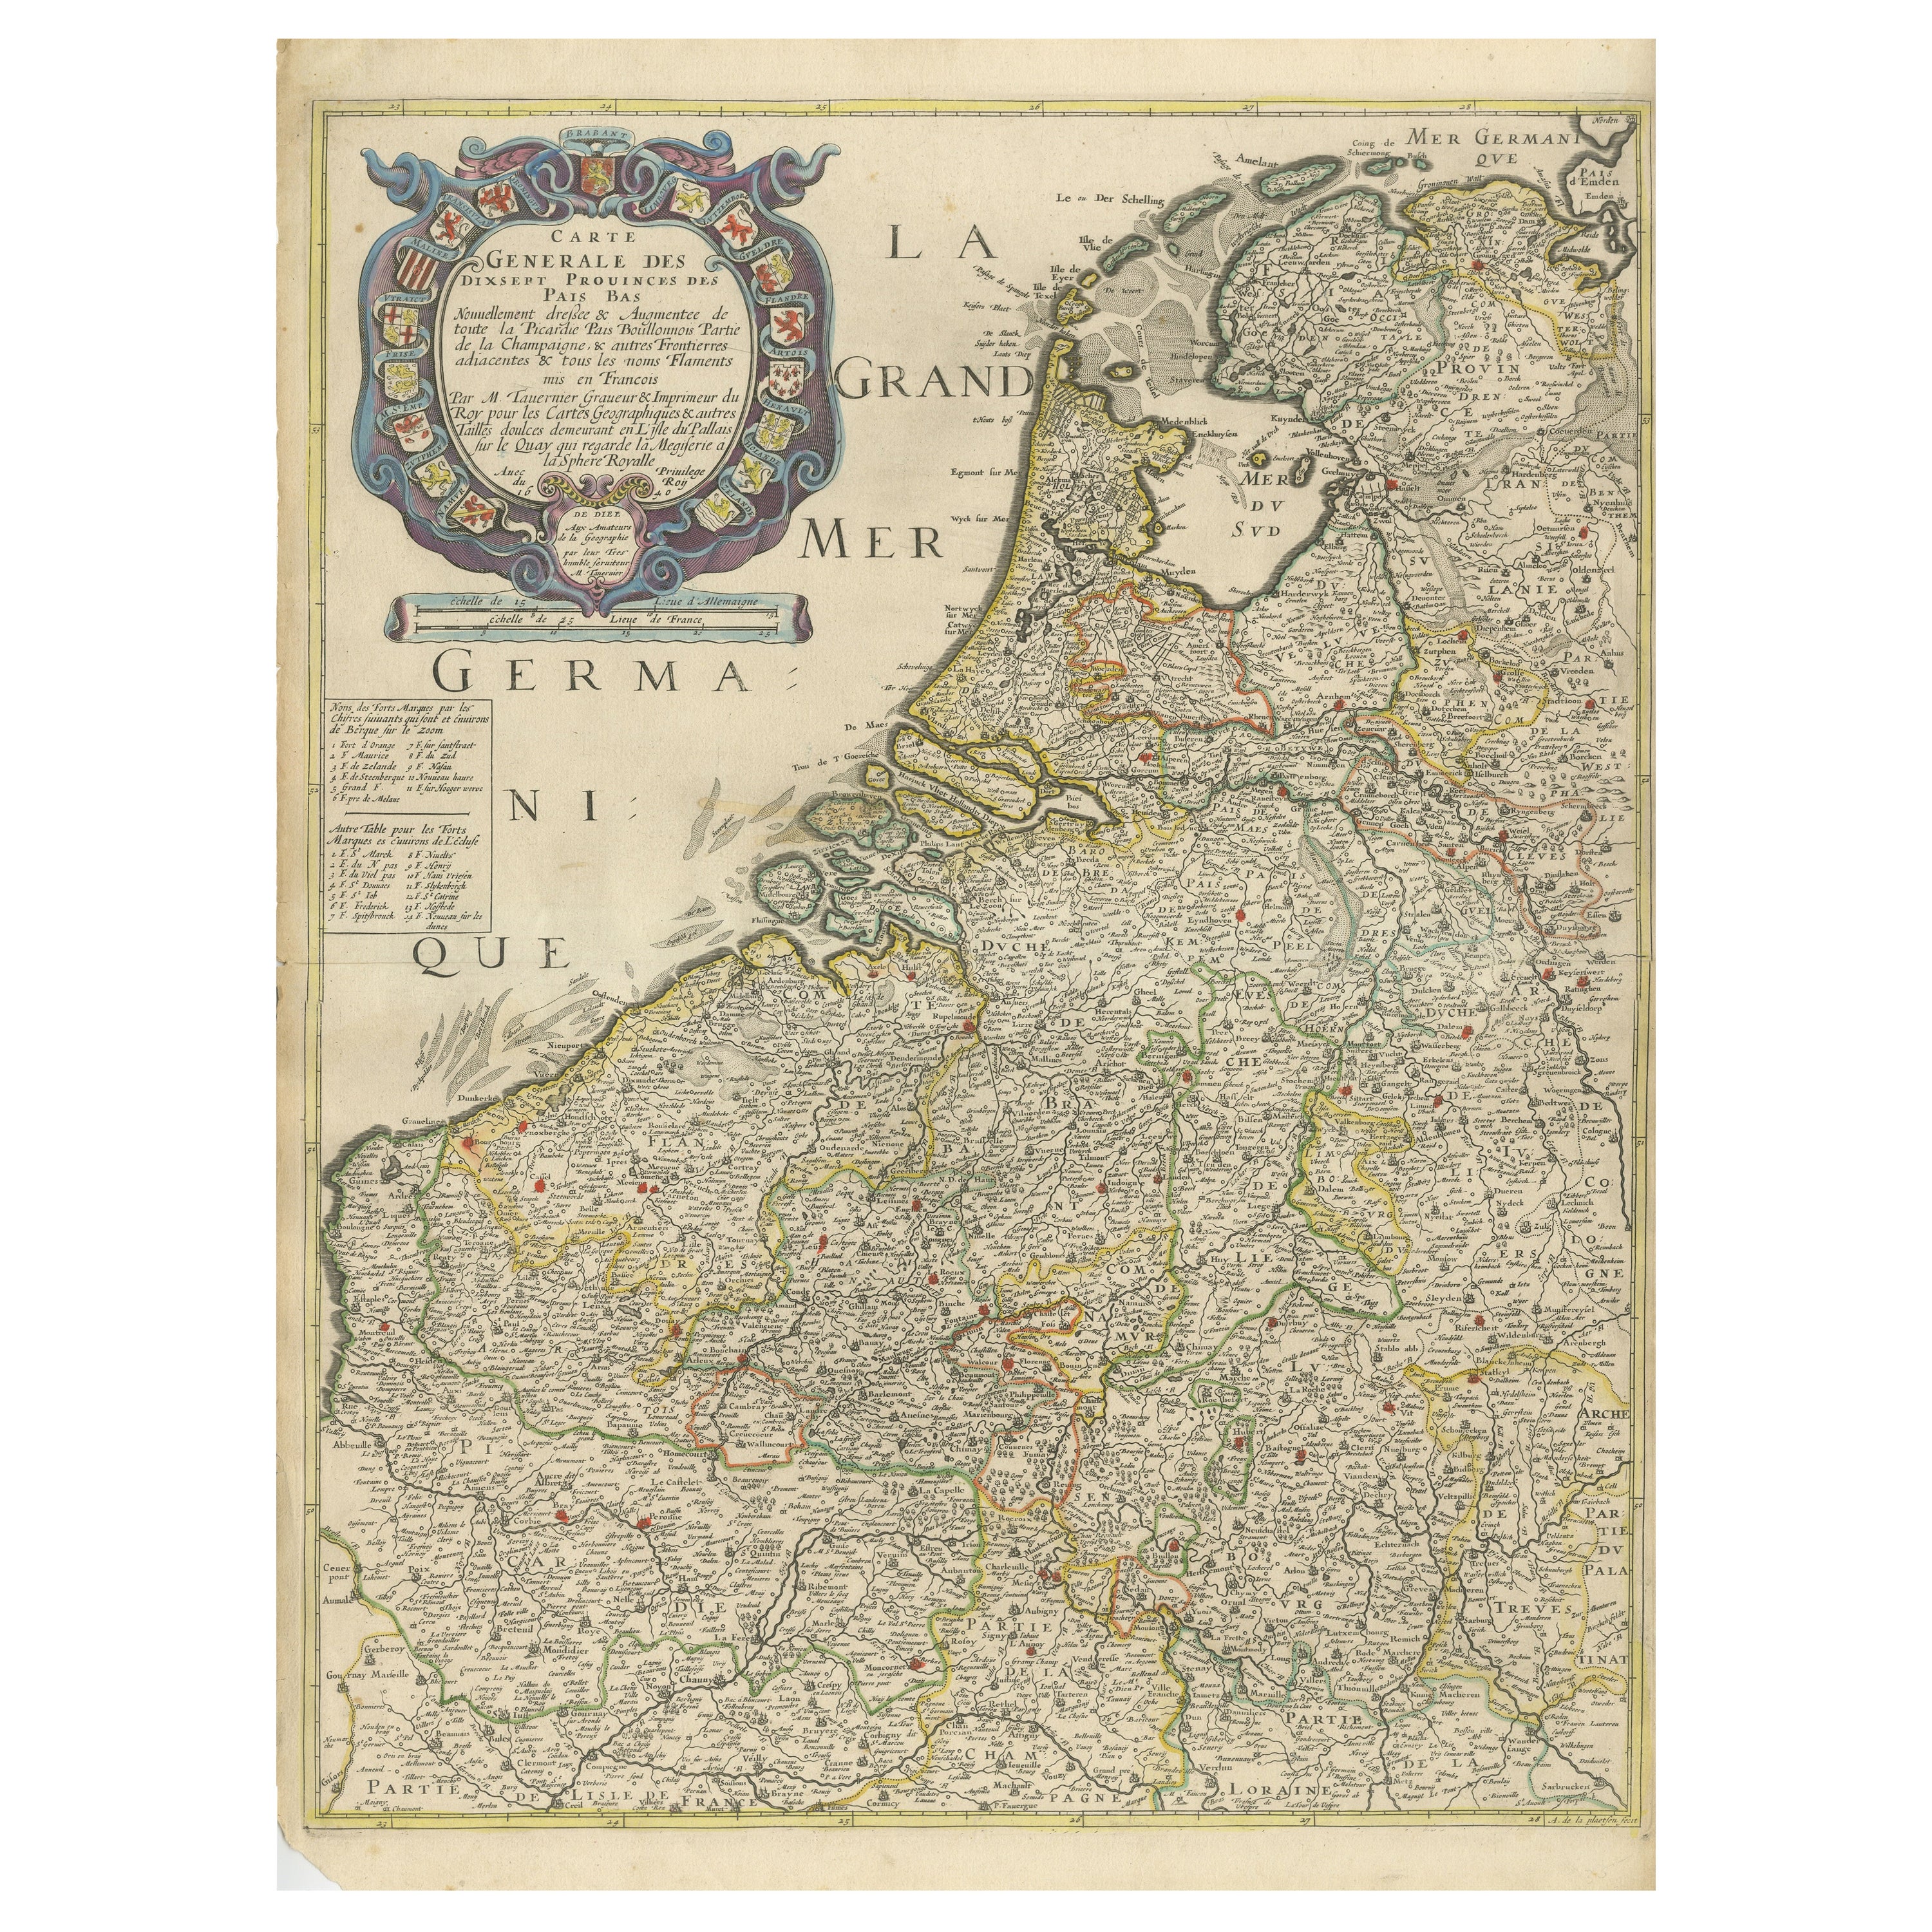 Rare et ancienne carte des dix-sept provinces, publiée vers 1640